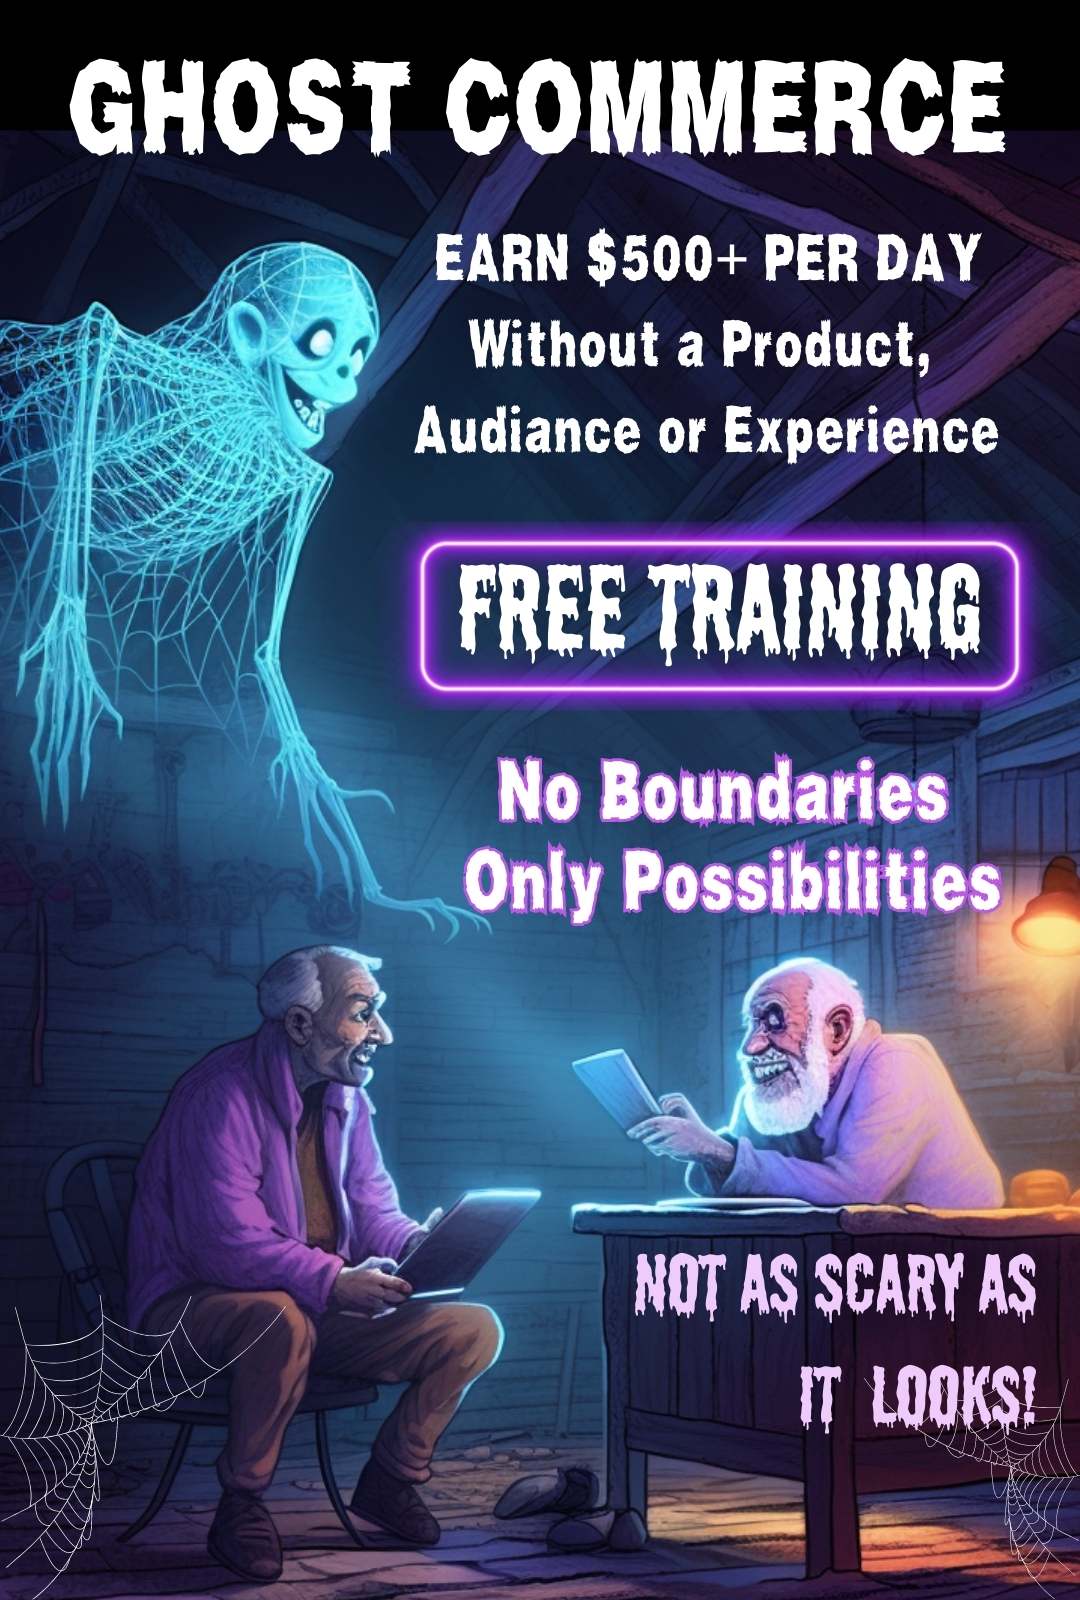 Ghost Commerce. Register for free training